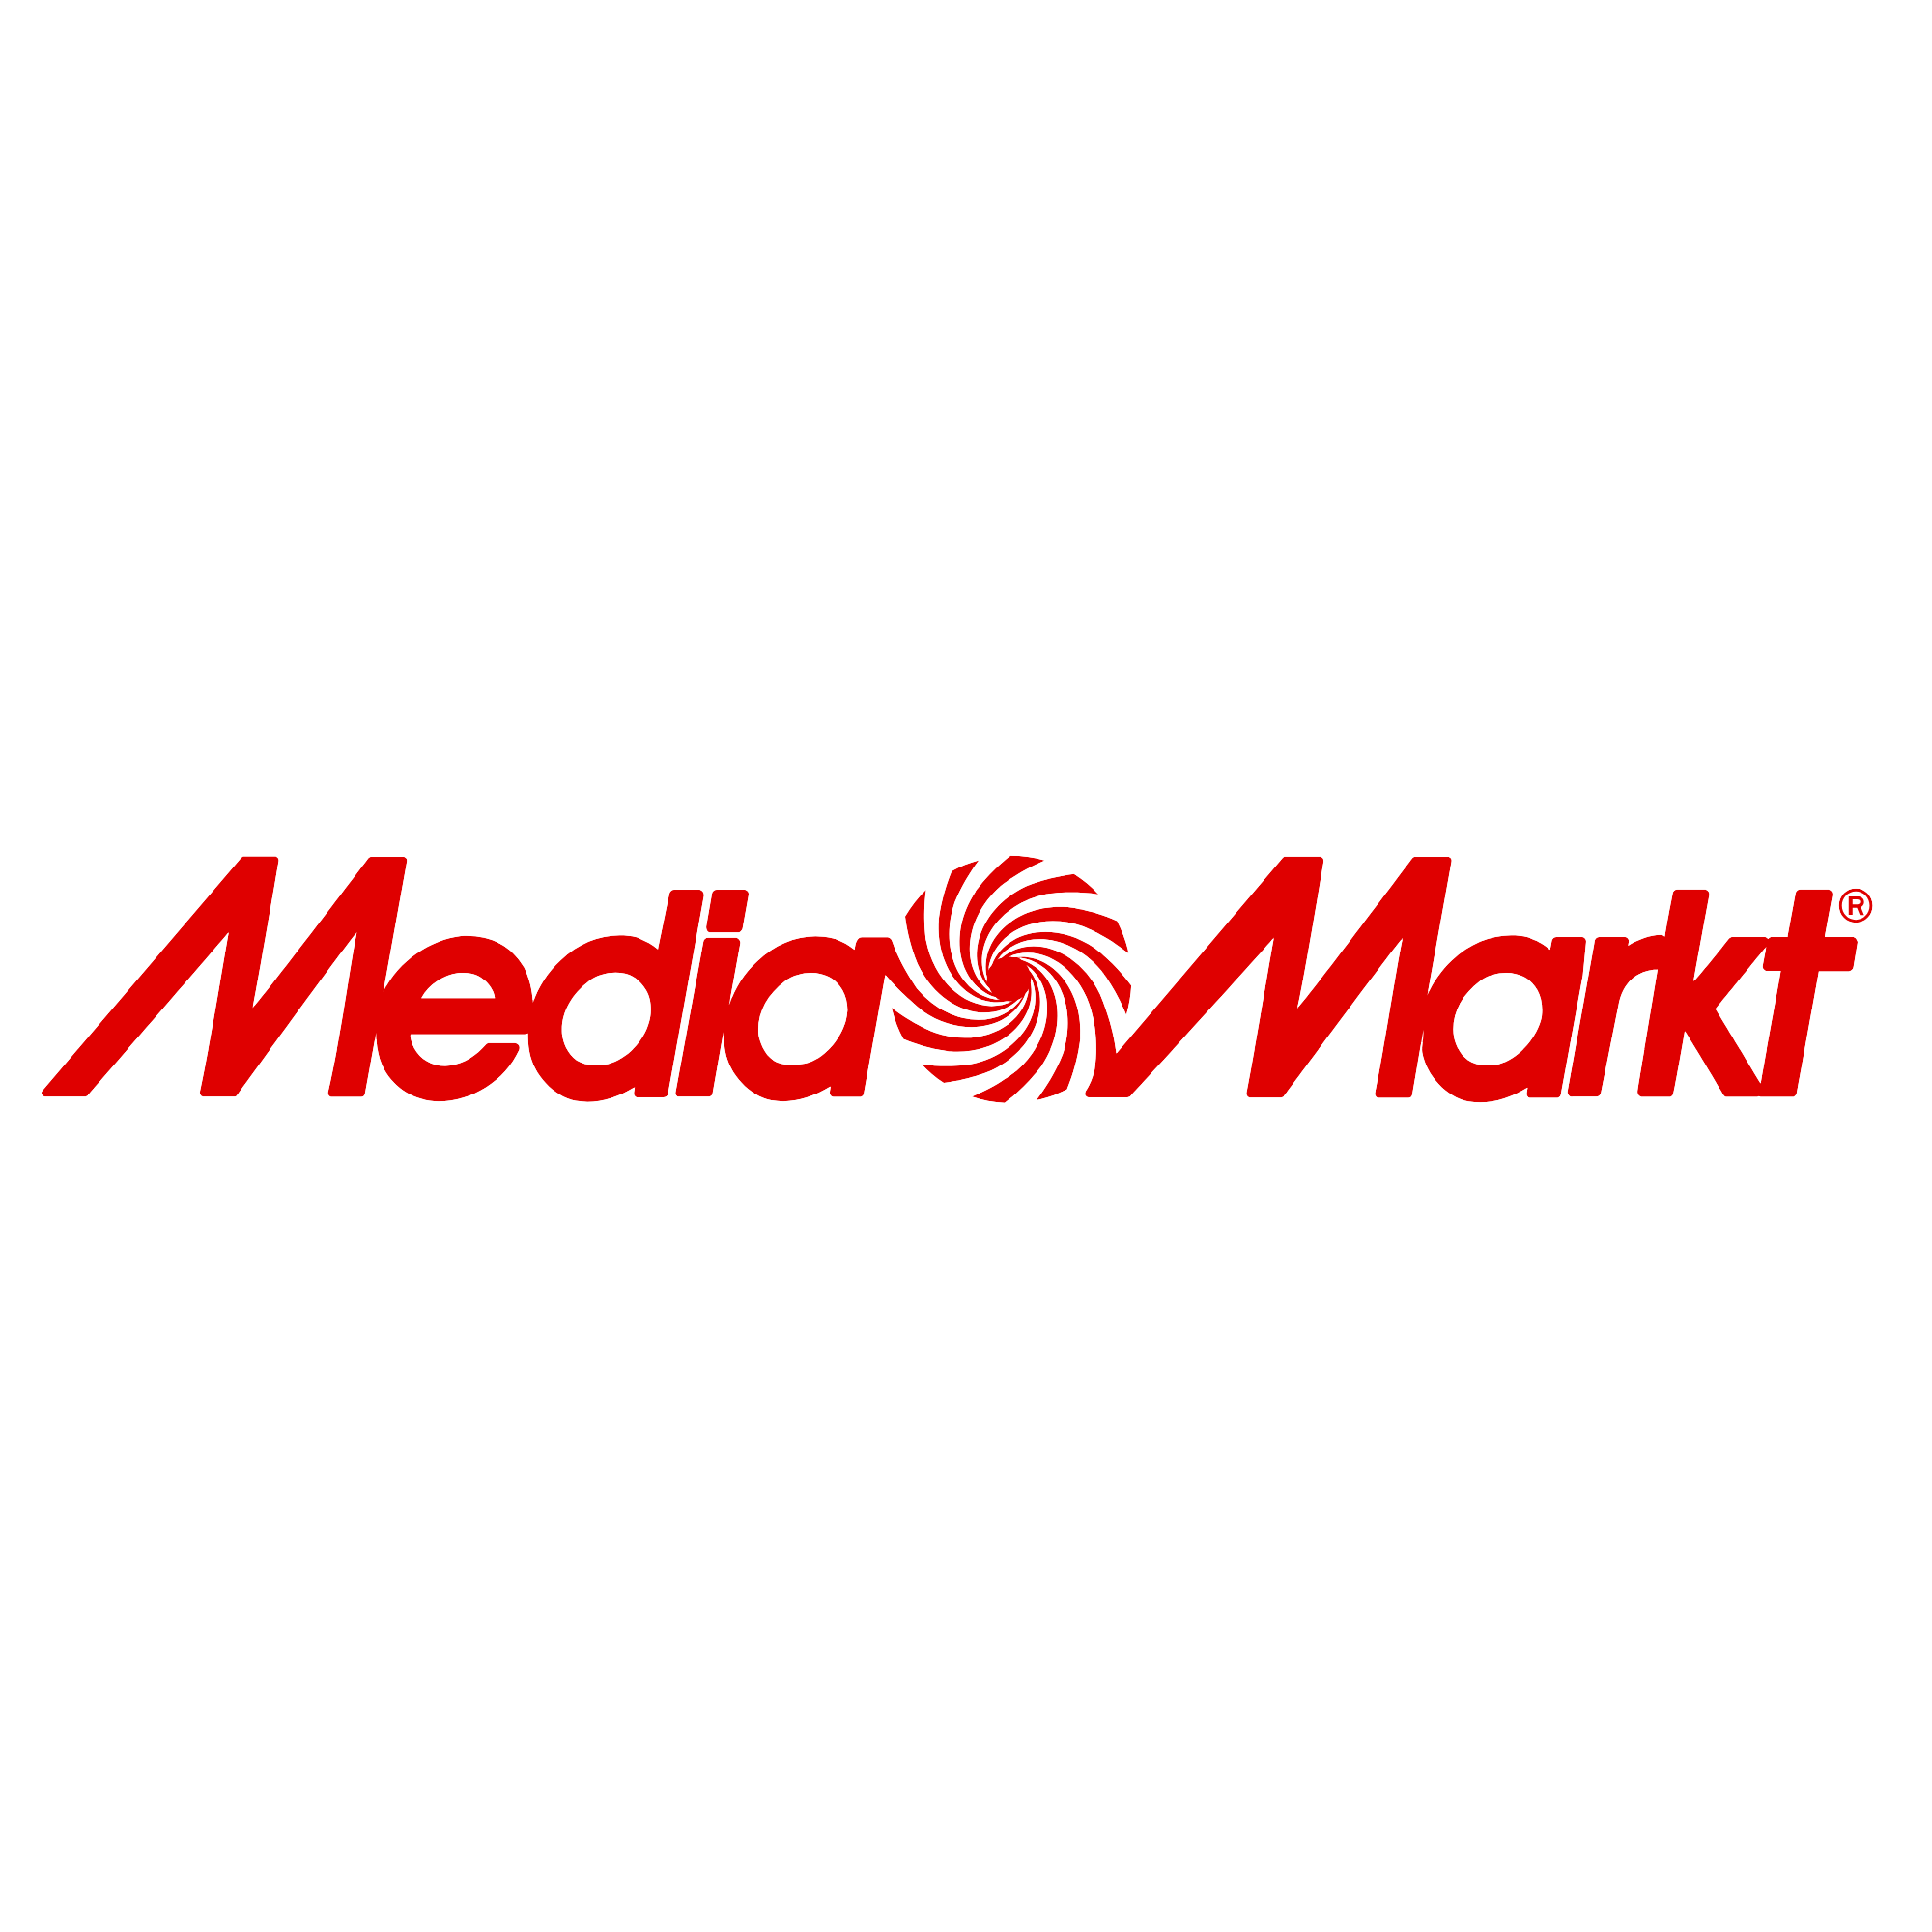 Camino teoría agradable 24 aniversario en Mediamarkt los mejores precios | MediaMarkt | MediaMarkt